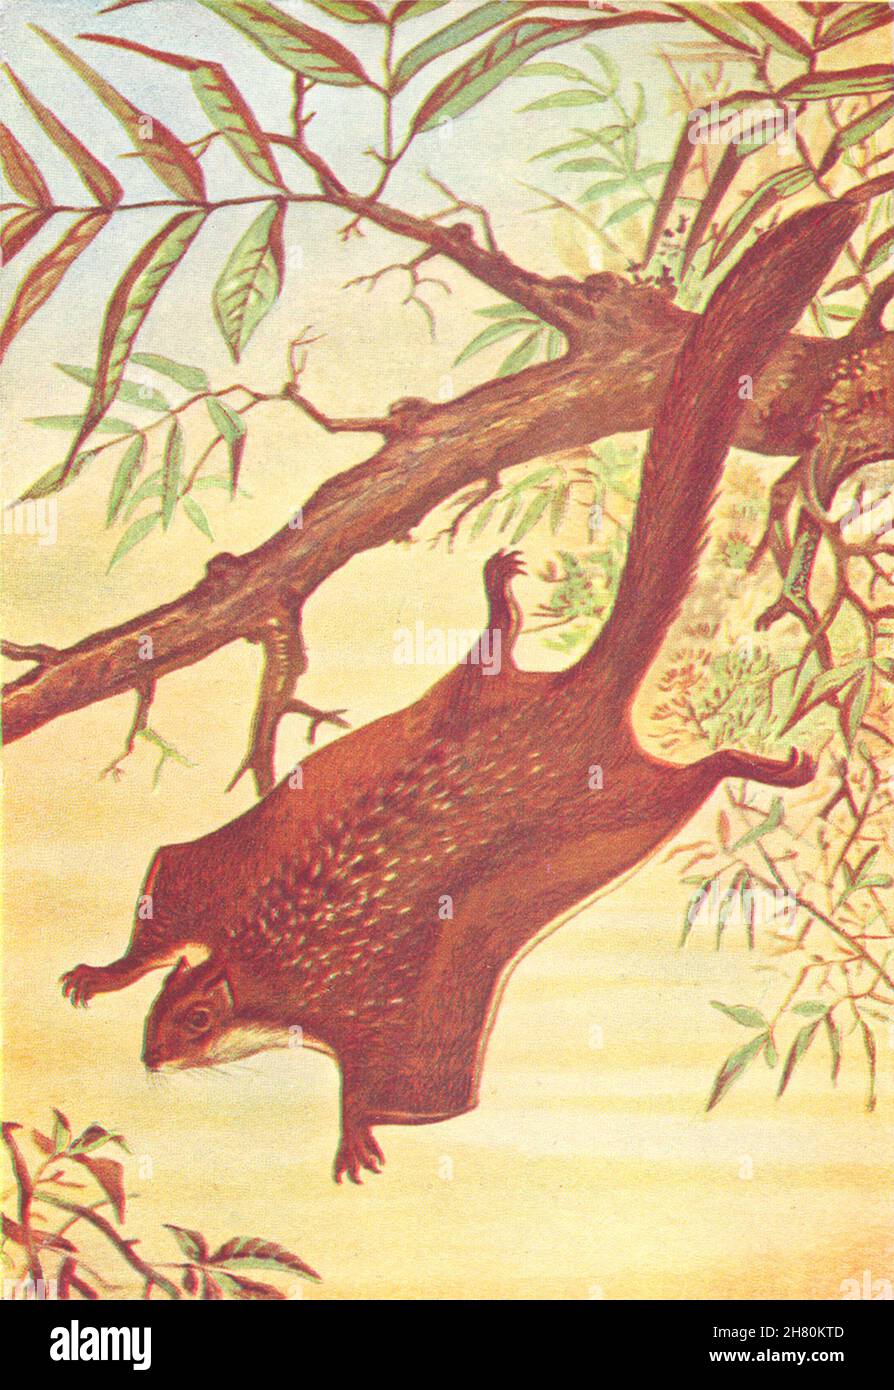 FLUGZEUG. Der Flug der Tiere. Flying Squirrel 1930 alter Vintage-Druck Stockfoto